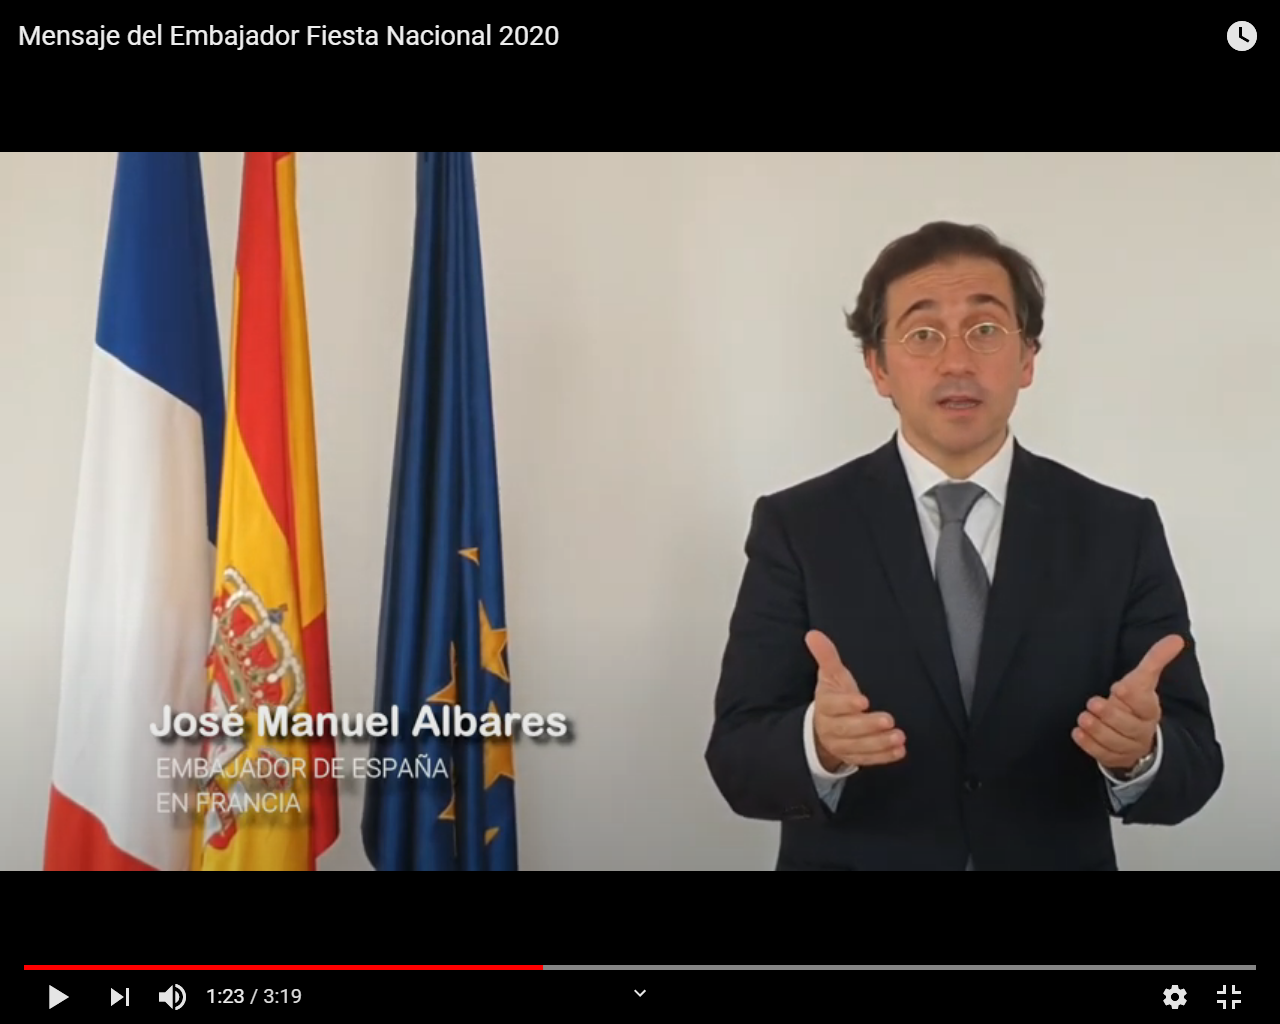 El Embajador de España en Francia envía un mensaje institucional en ocasión de la Fiesta Nacional en el siguiente enlace: